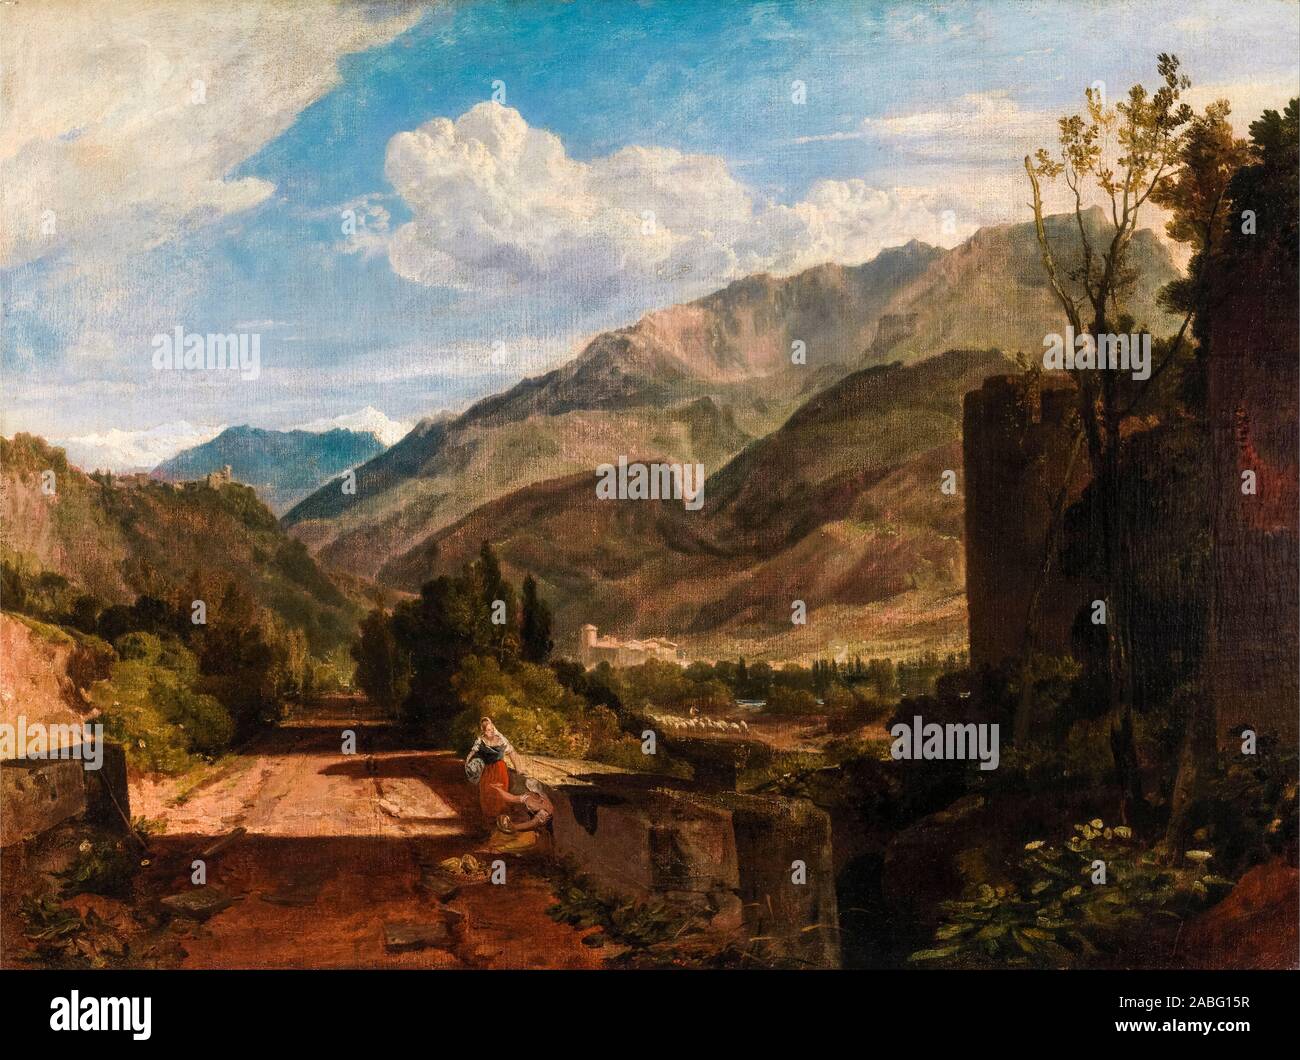 JMW Turner, Château de Saint Michel, Bonneville, Savoie, peinture de paysages, 1802-1803 Banque D'Images